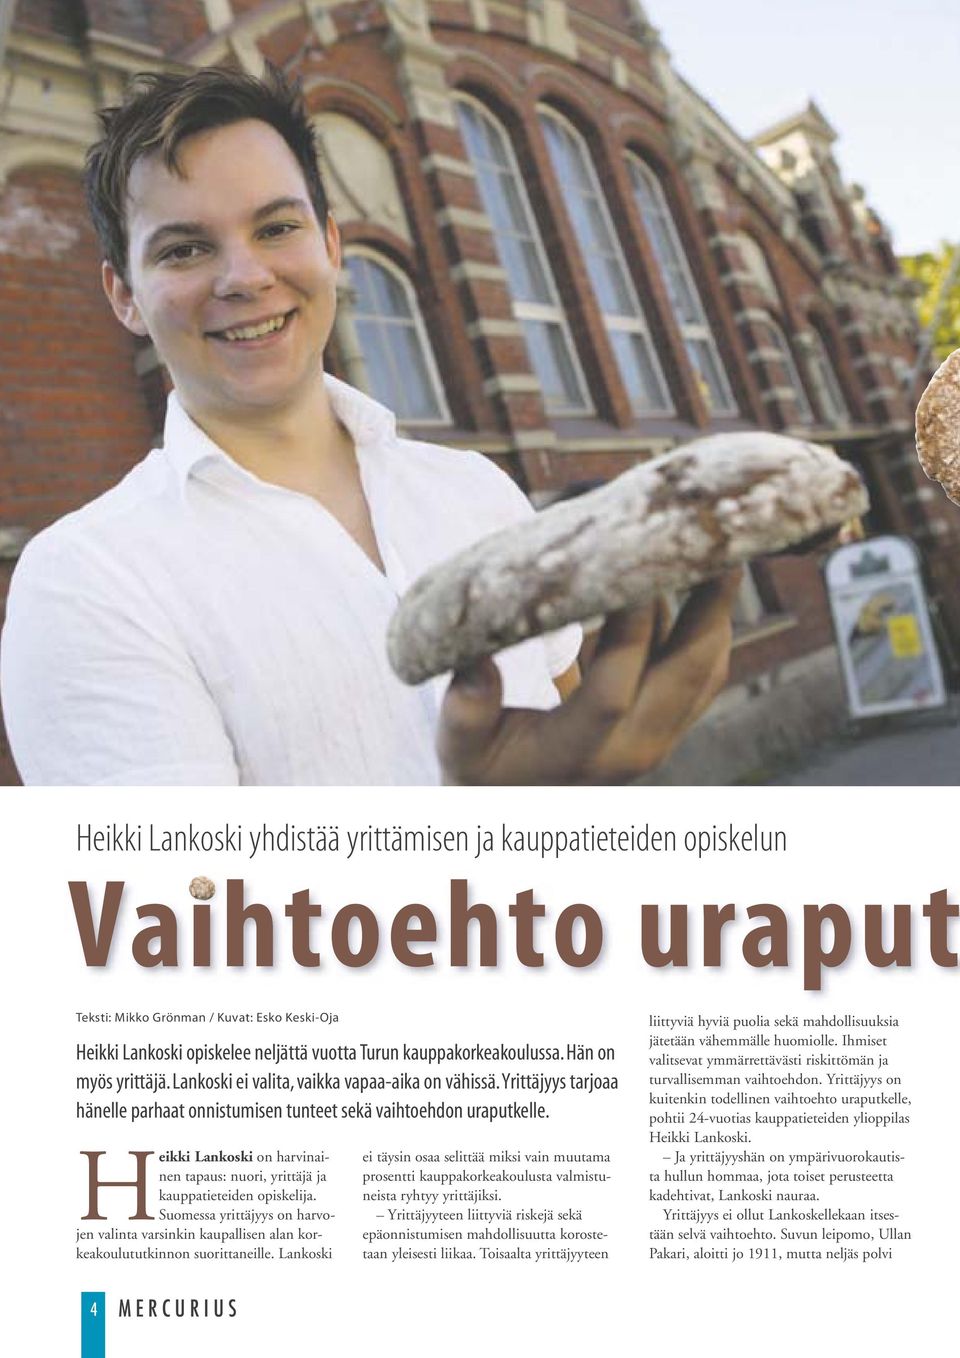 Heikki Lankoski on harvinainen tapaus: nuori, yrittäjä ja kauppatieteiden opiskelija. Suomessa yrittäjyys on harvojen valinta varsinkin kaupallisen alan korkeakoulututkinnon suorittaneille.